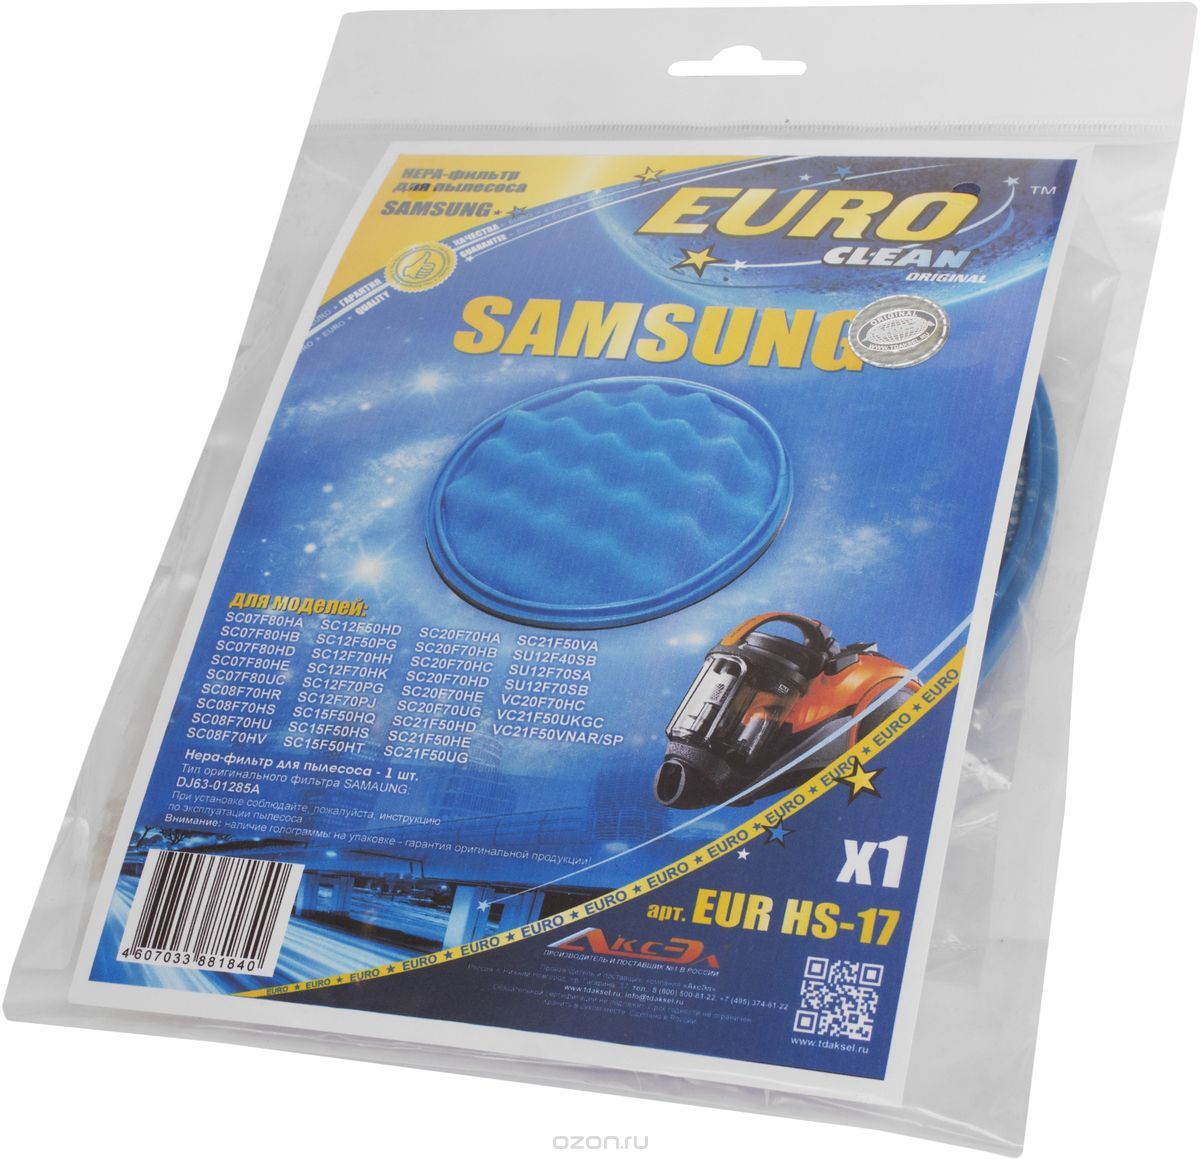 Euro Clean EUR HS-17 HEPA-   Samsung ( DJ63-01285A)